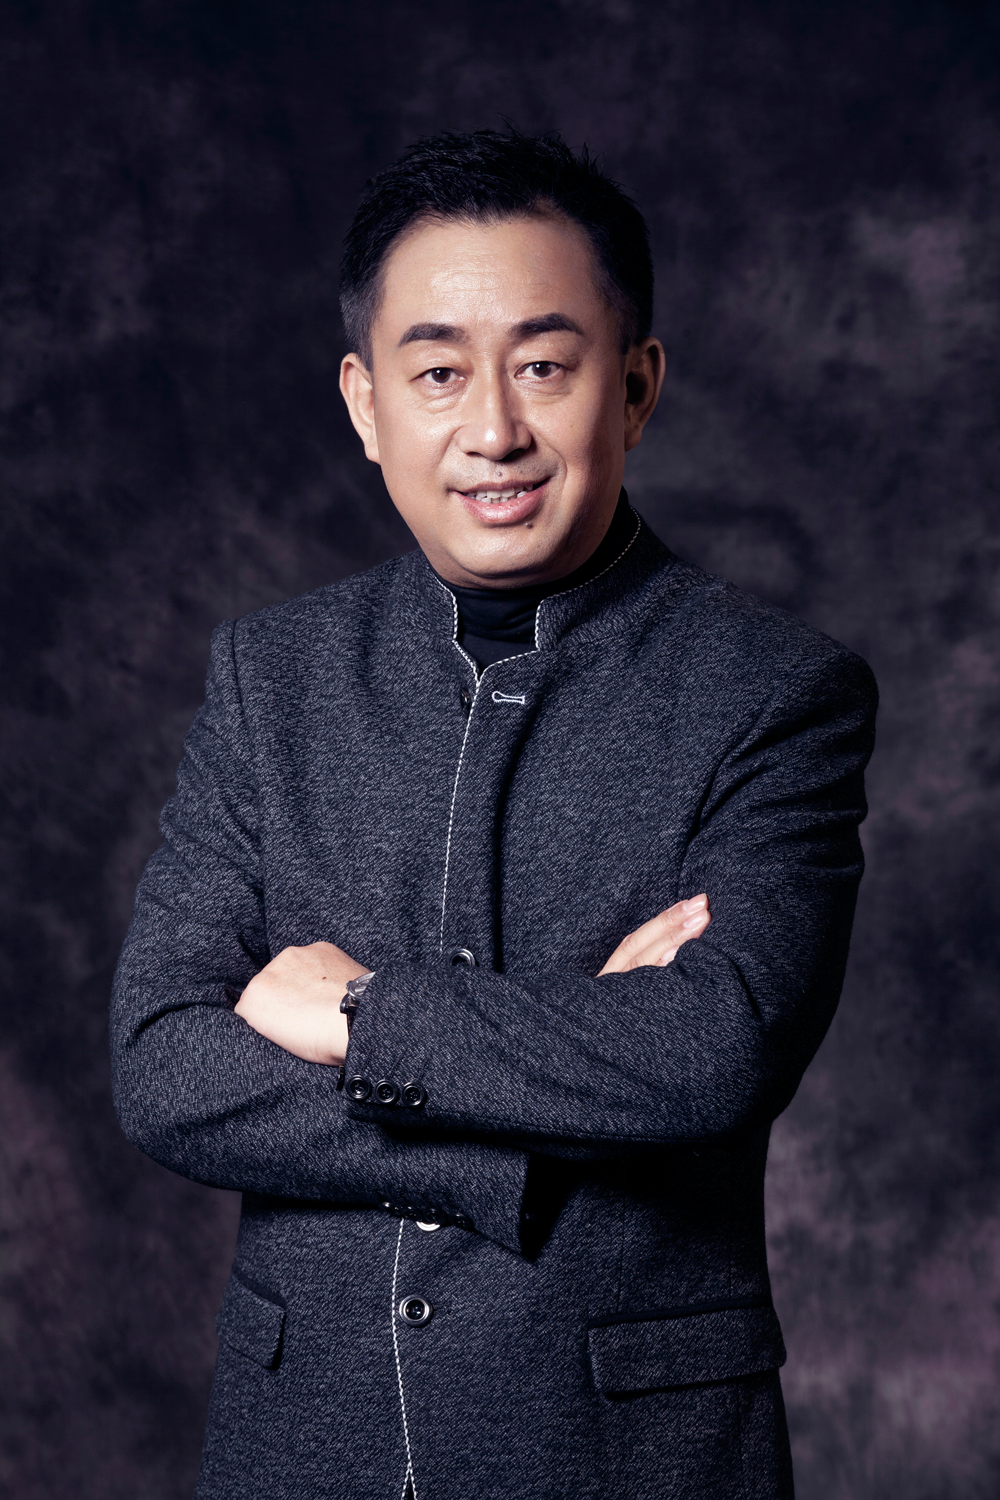 許澤民(網秦CEO)